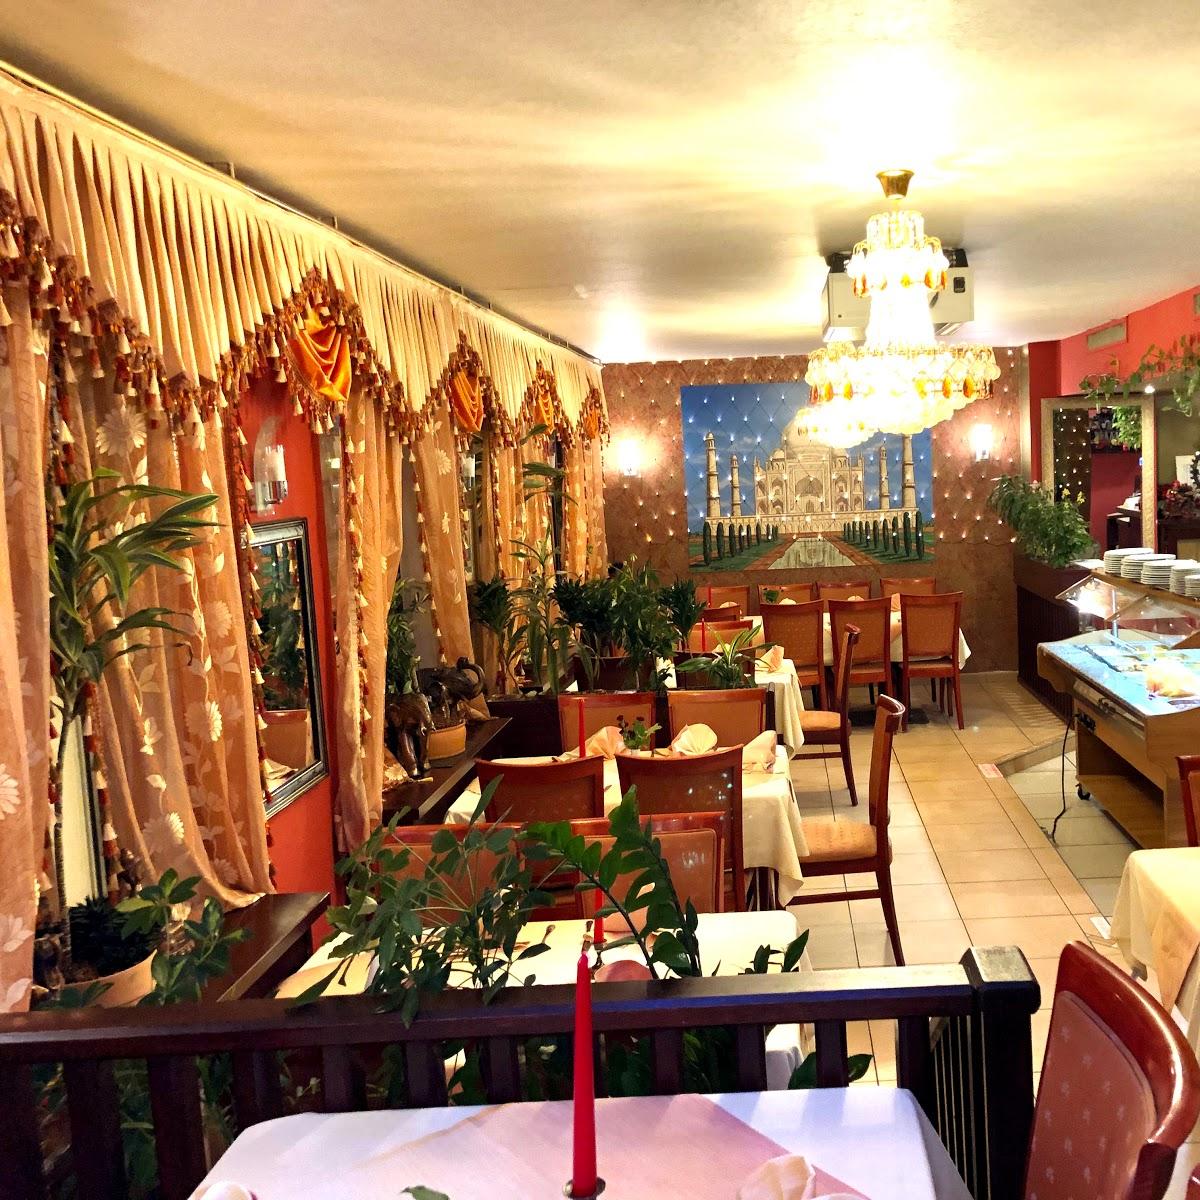 Restaurant "Restaurant Indian Palace Inh. B. Singh" in Darmstadt